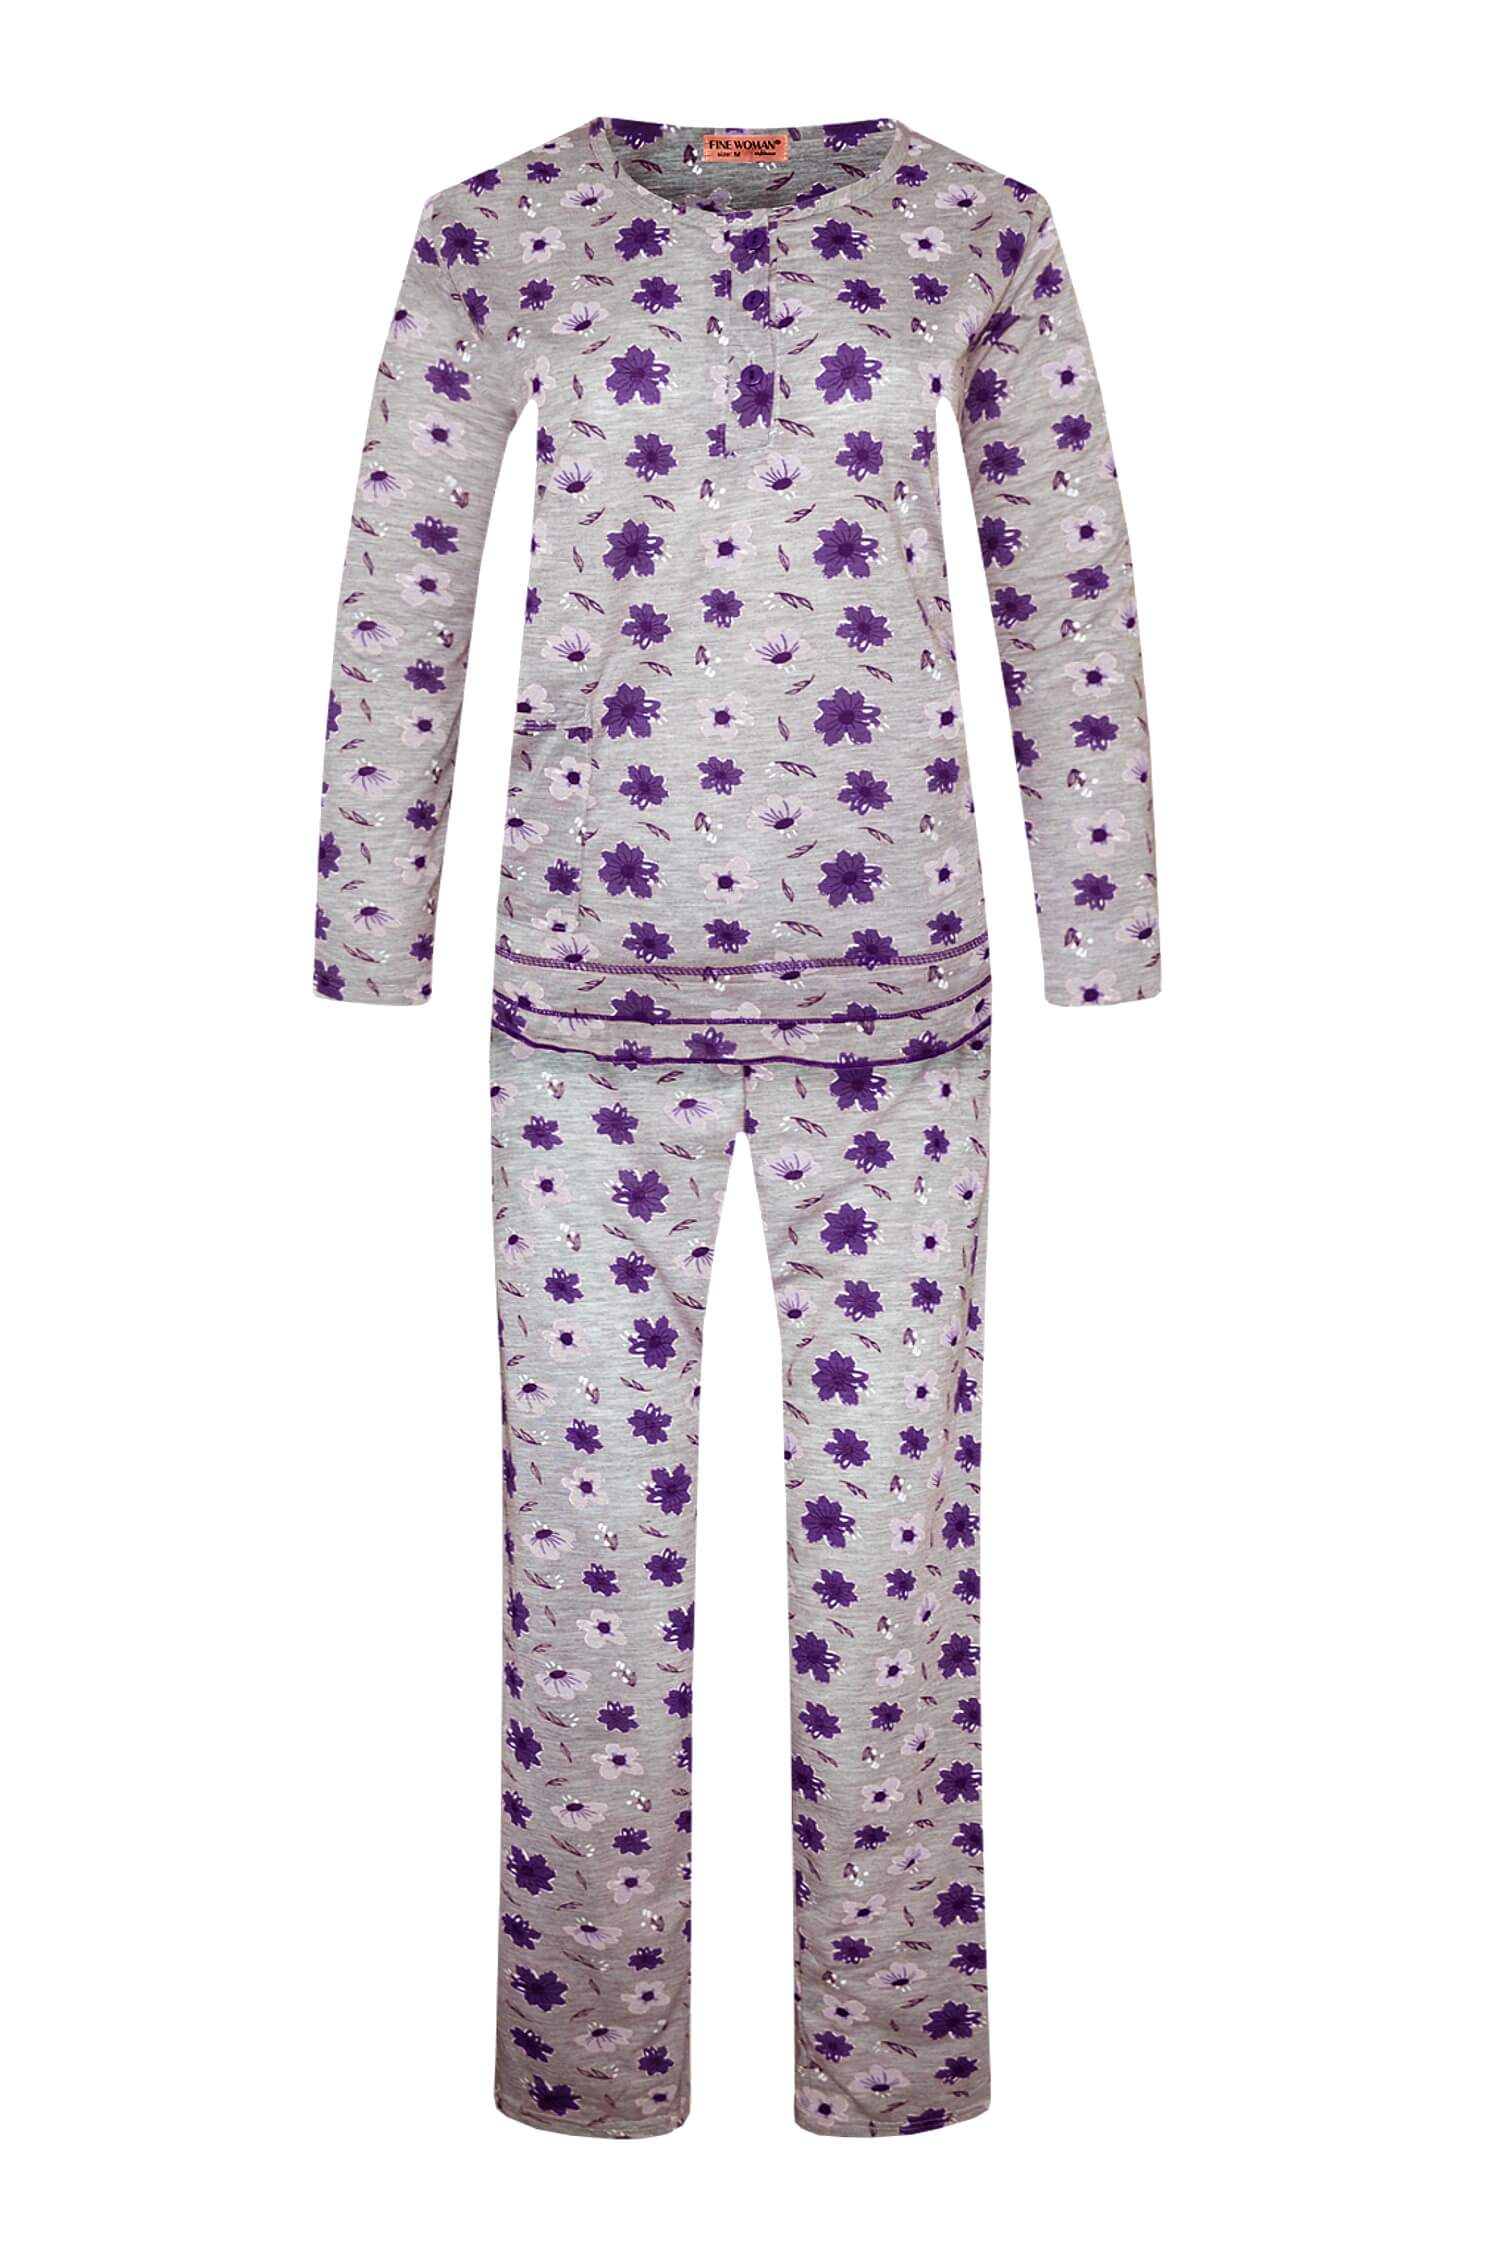 Arenda dámské dlouhé pyžamo 2297 XL fialová